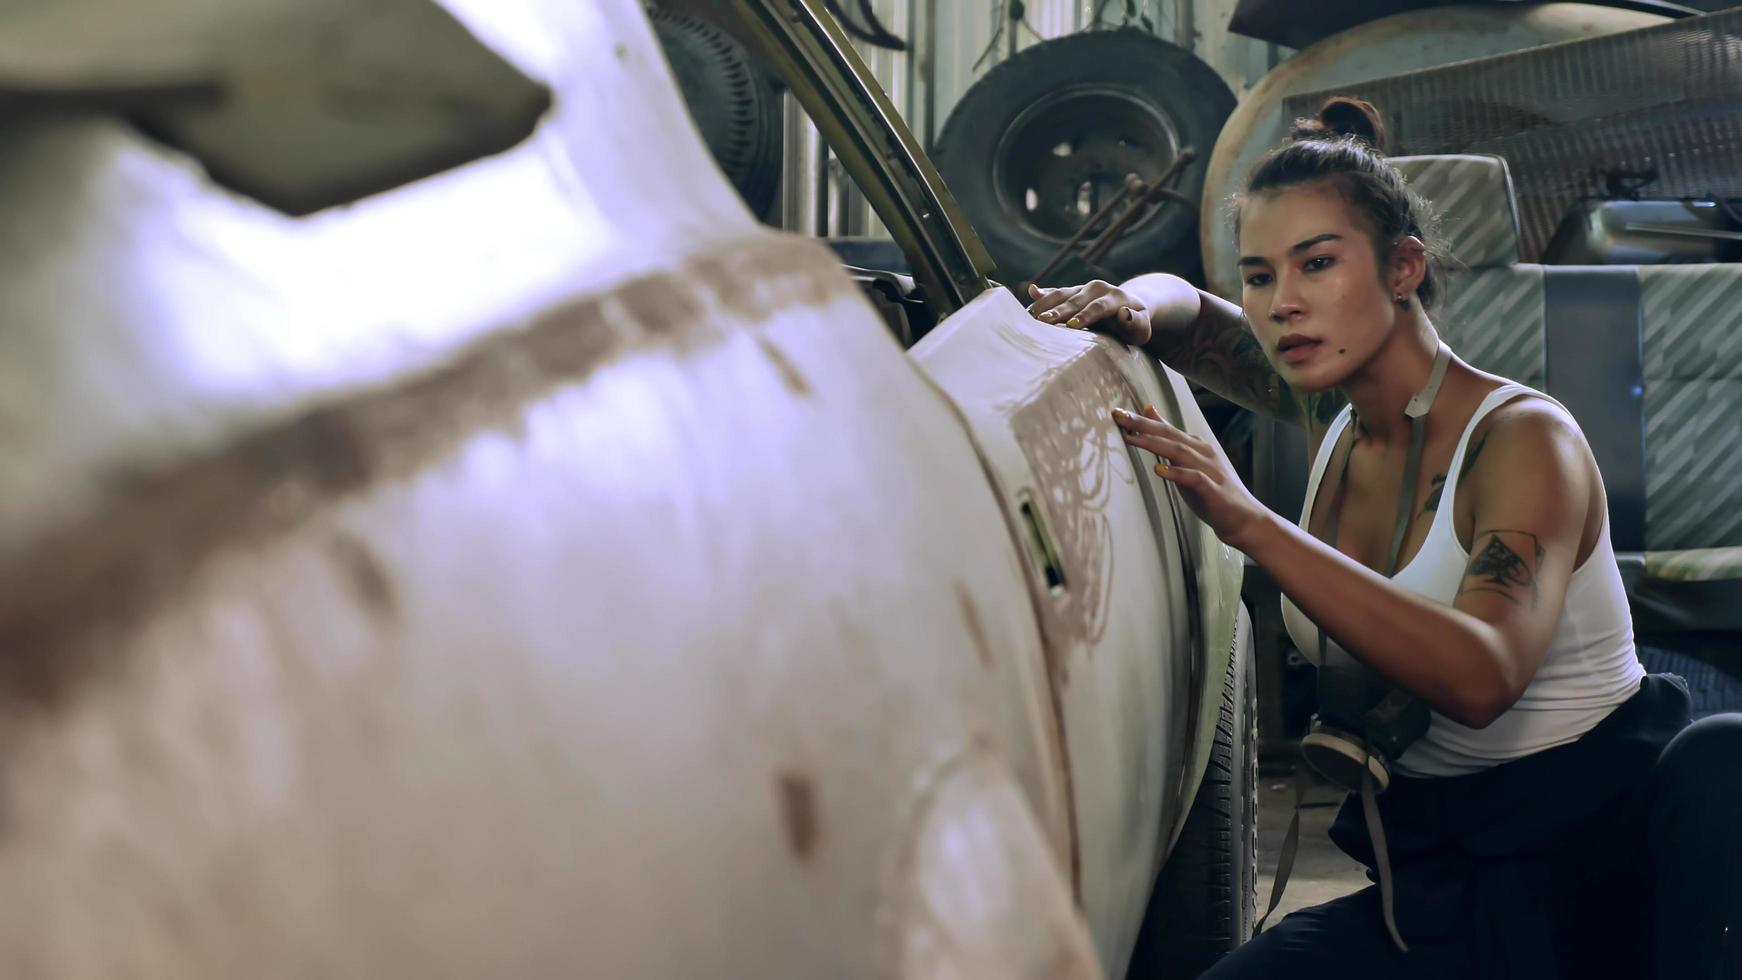 attraktiv ung kvinna mekanisk arbetstagare reparation en årgång bil i gammal garage. foto